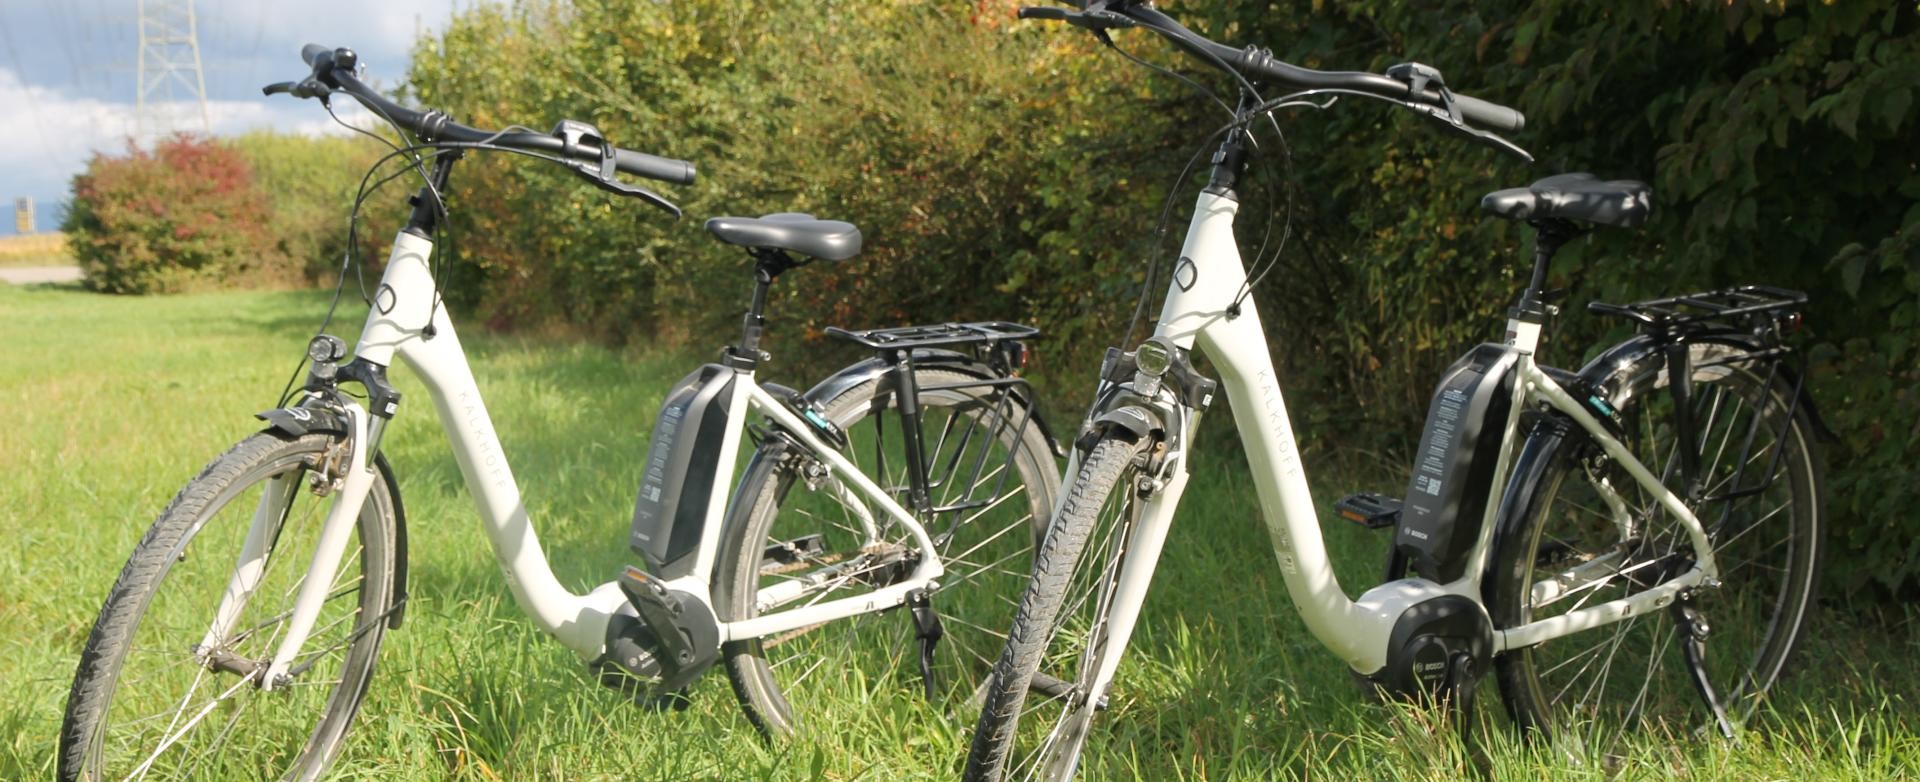 Zwei E-Bikes stehen im Gras